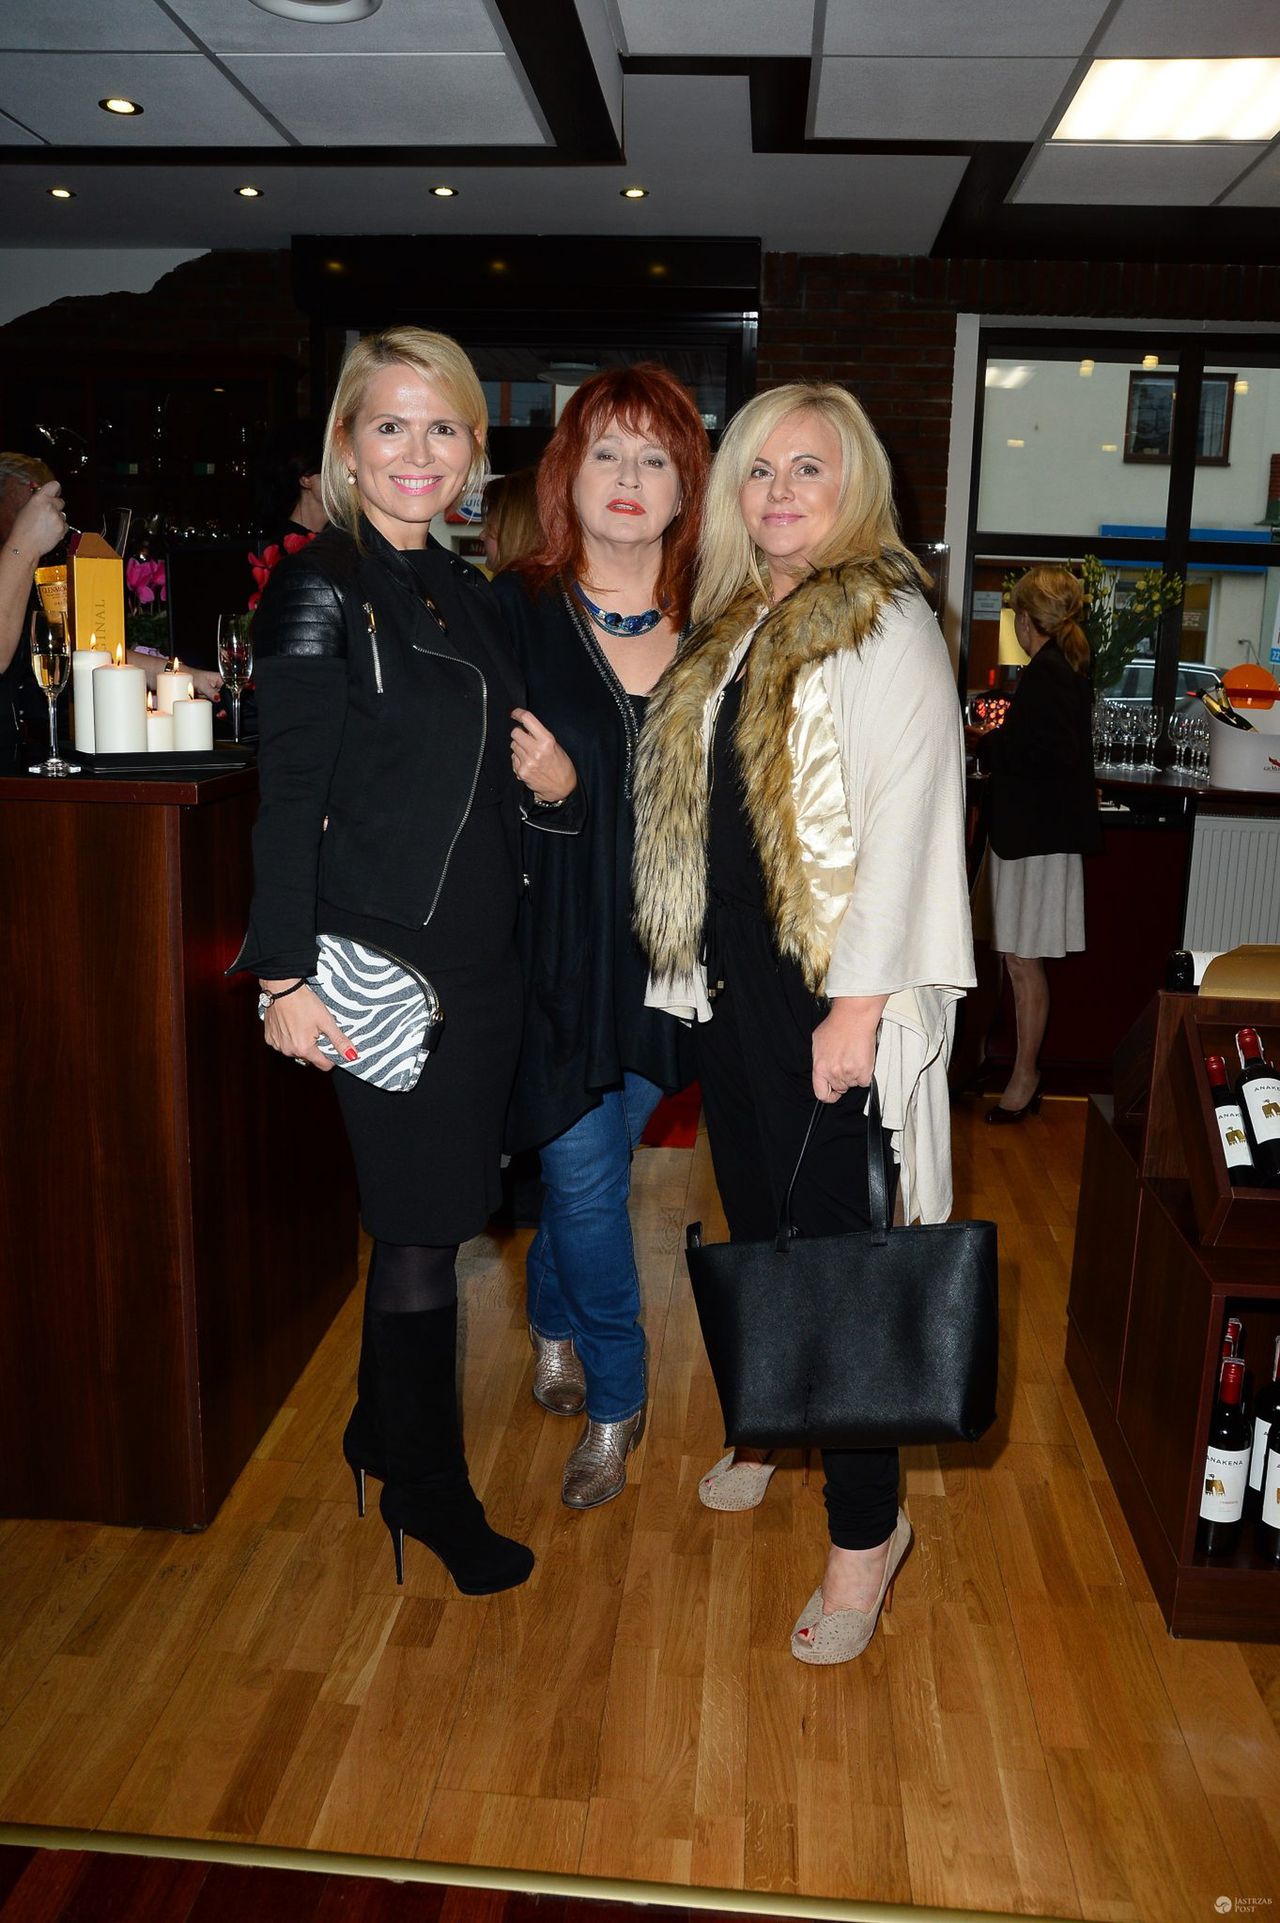 Anna Jurksztowicz, Danuta Błażejczyk i Joanna Kurowska na otwarciu salonu z ekskluzywnymi trunkami w Konstancinie